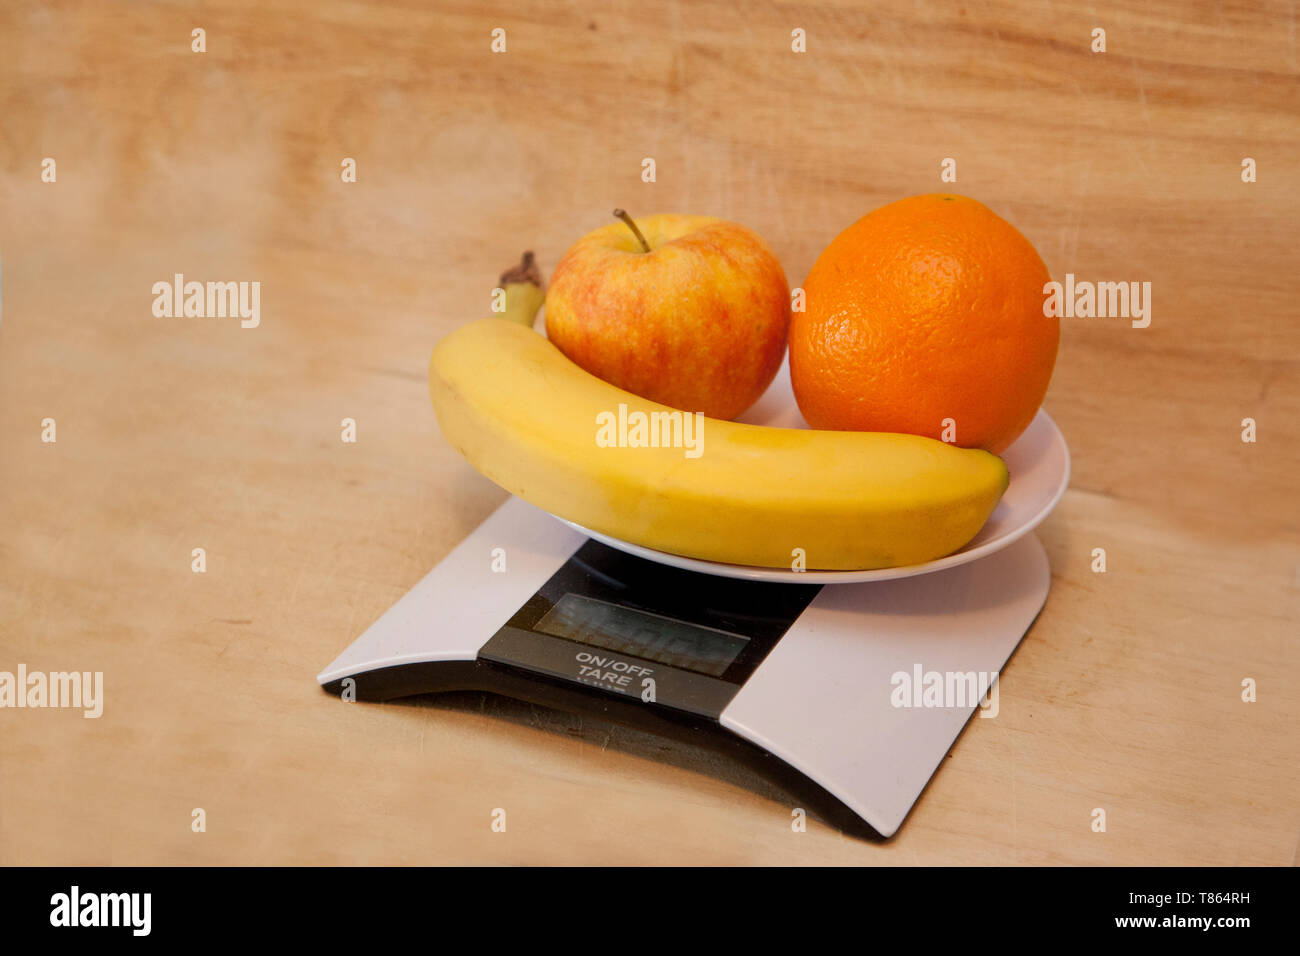 Banane, orange et apple sur une échelle numérique étant pesé comme un choix santé Banque D'Images